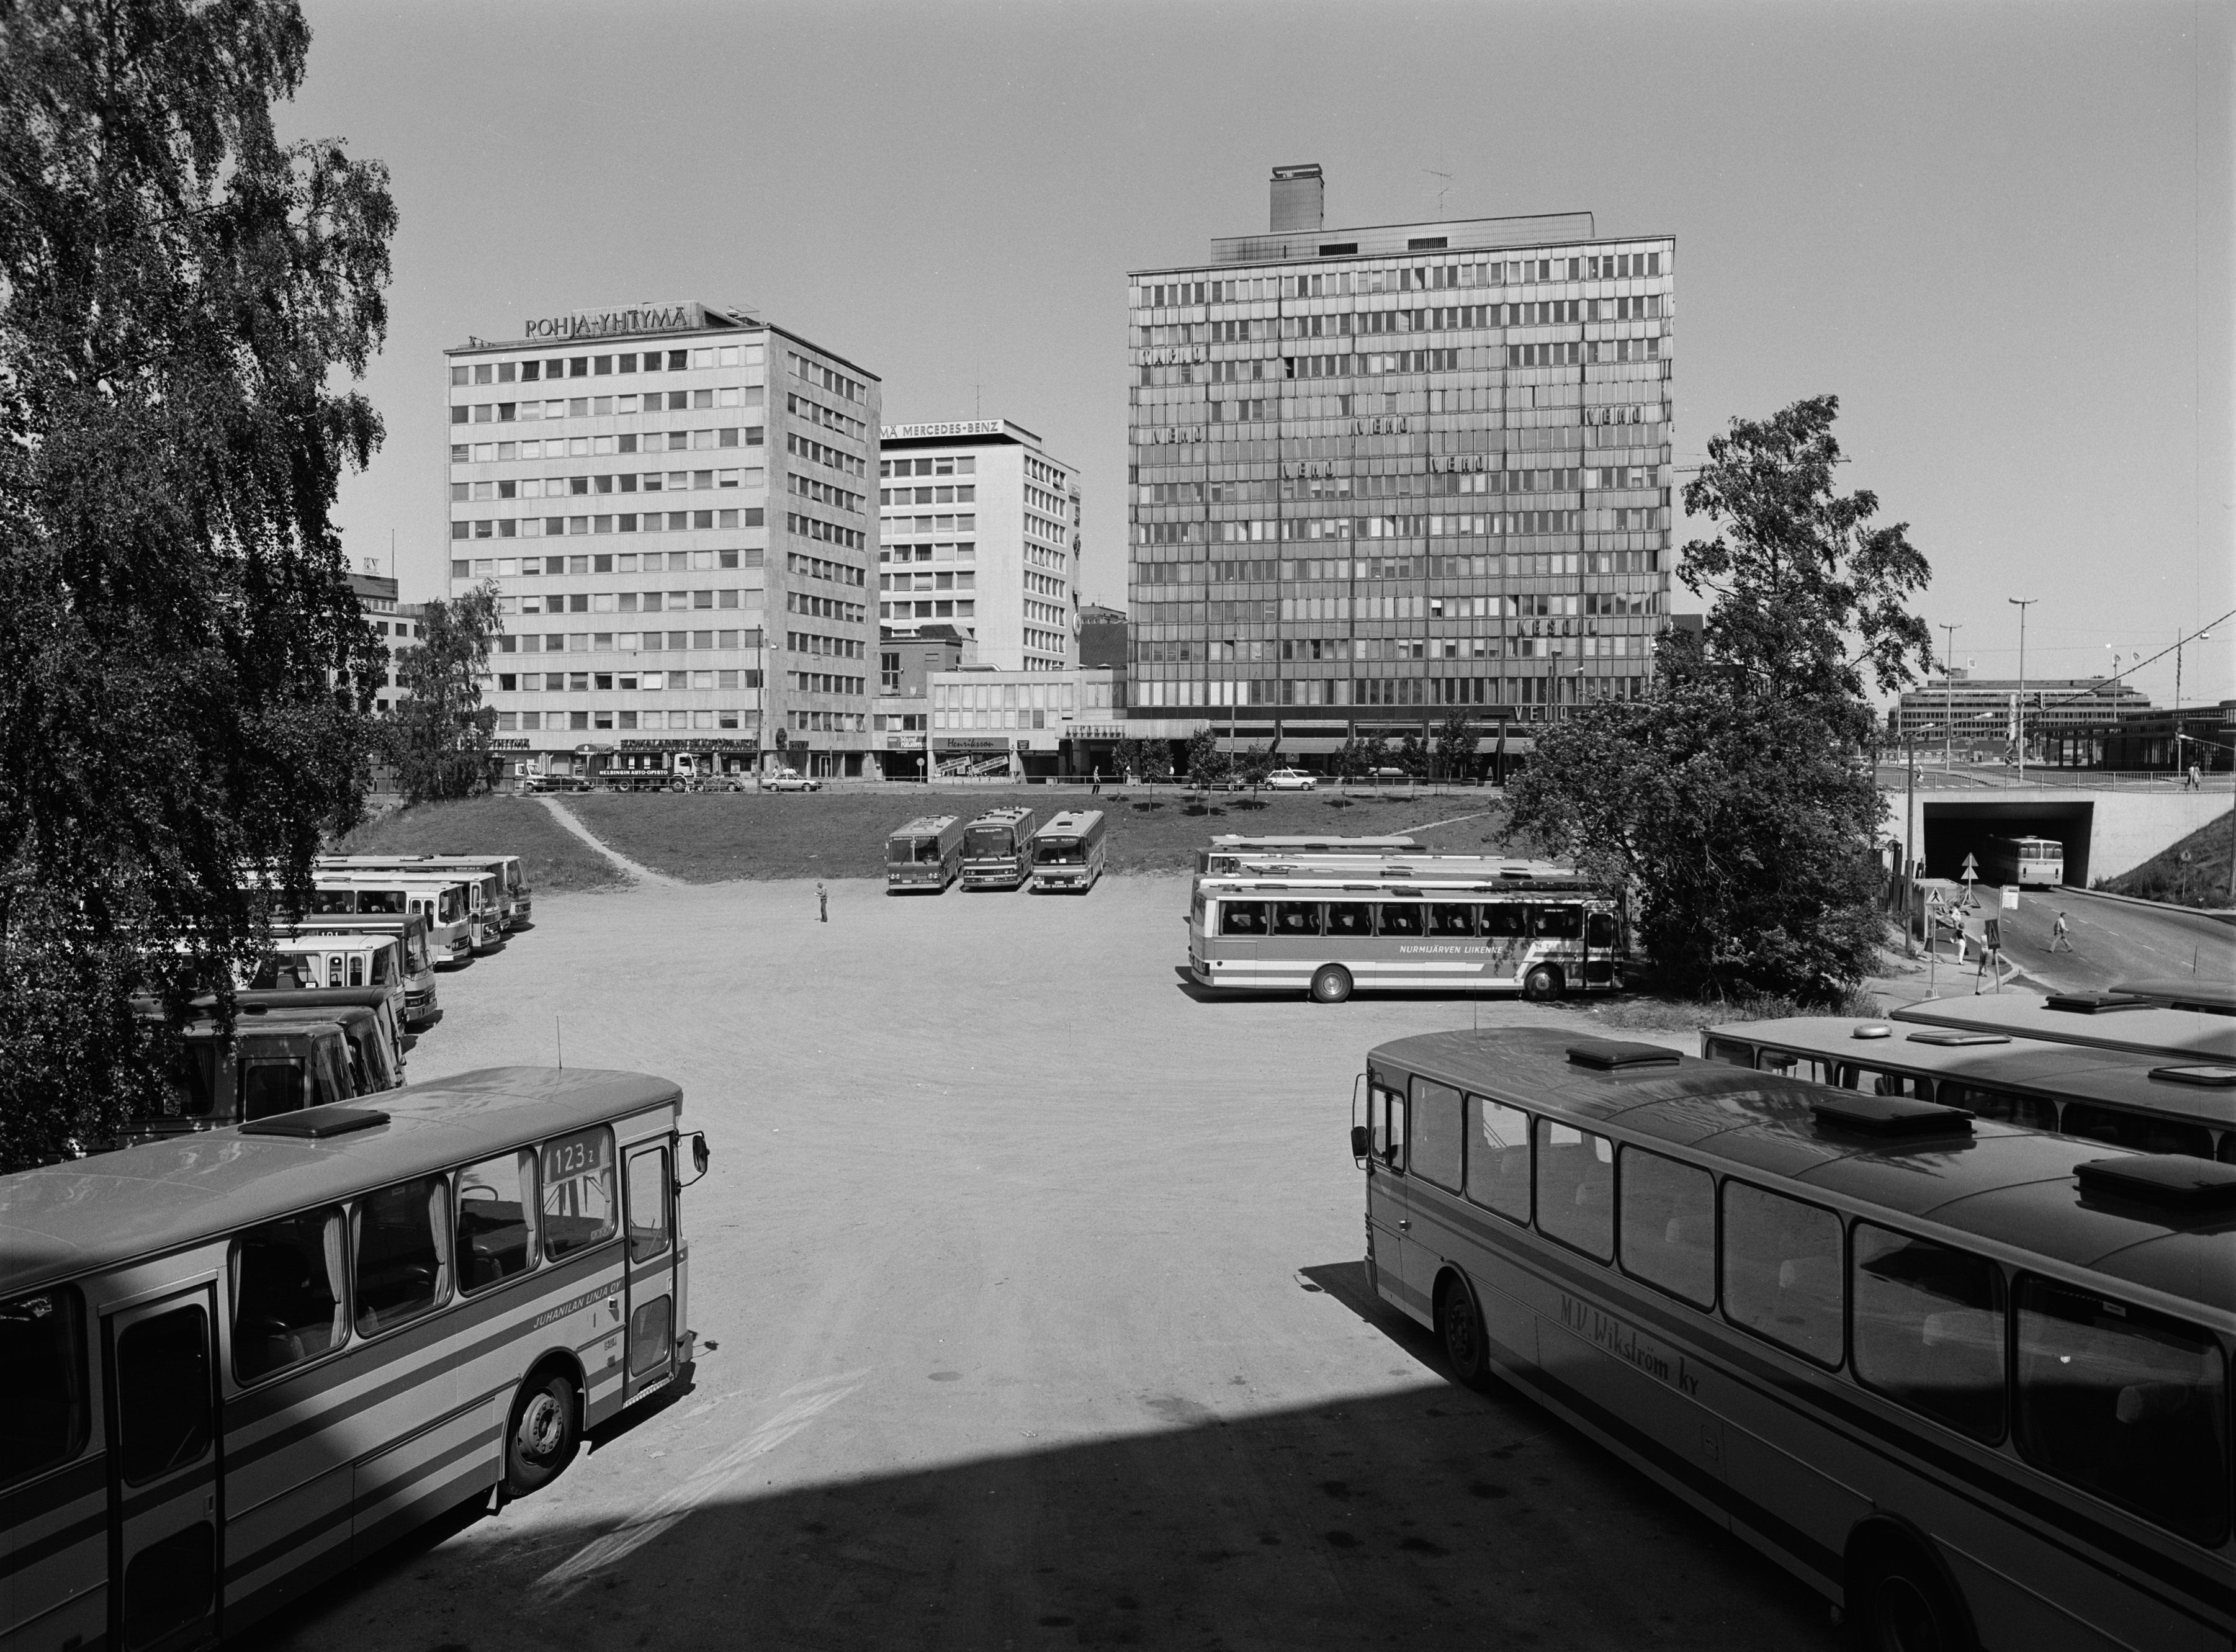 Linja-autojen pysäköintialue Kampin kolmiossa, Malminkadun ja Runeberginkadun välissä.  Taustalla Salomonkatu 17, Runeberginkatu 5.